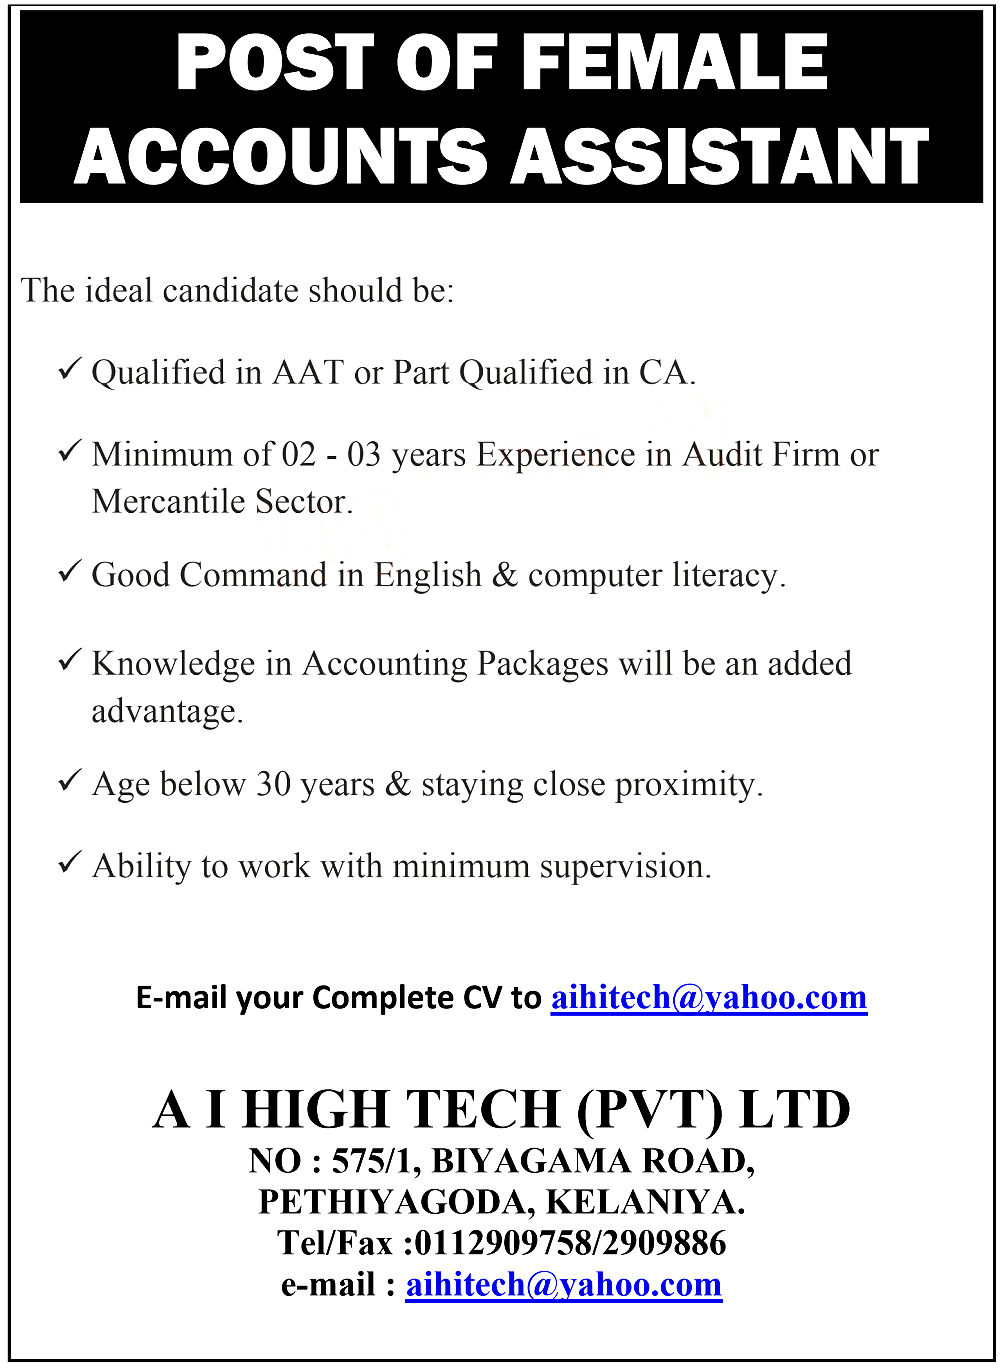 Female Accounts Assistant Job Vacancy at A I High Tech (Pvt) Ltd Company Job Vacancies